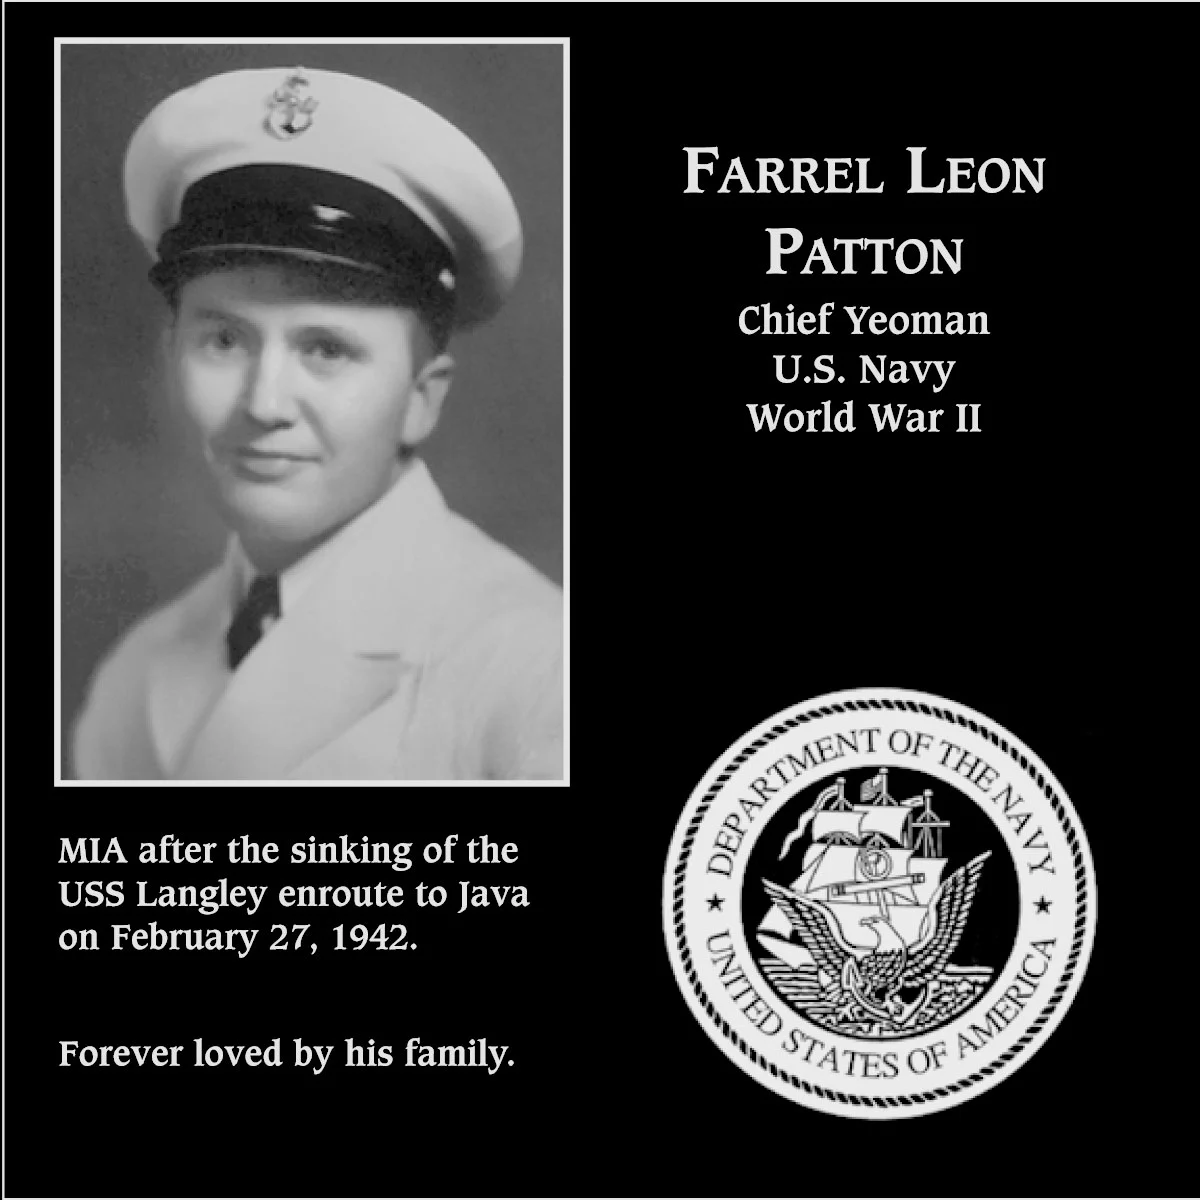 Farrel Leon Patton